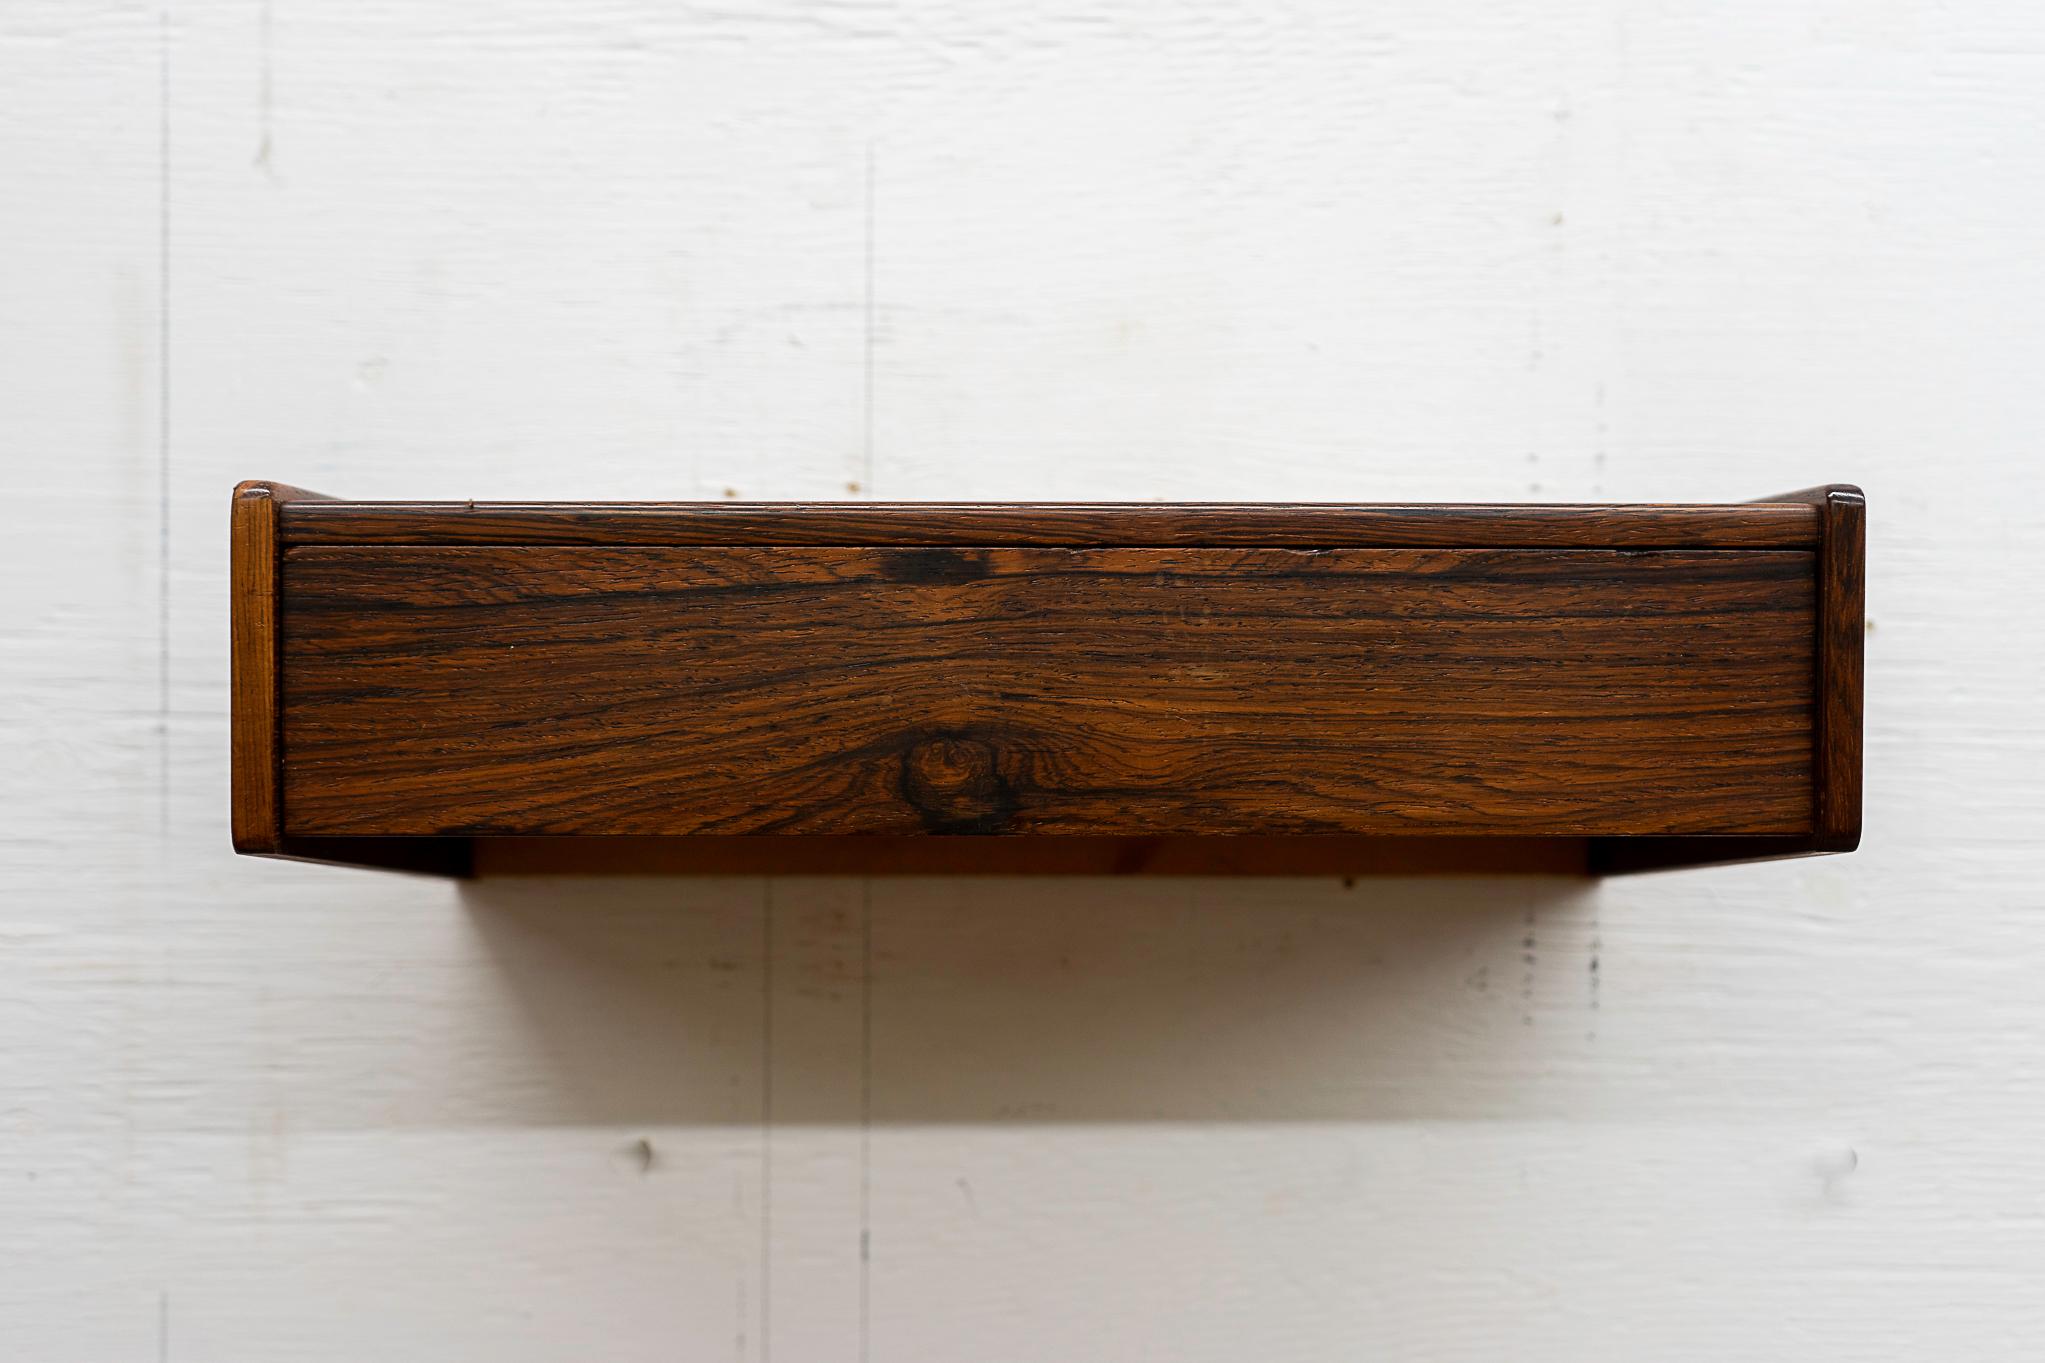 Schwebender dänischer Nachttisch/Regal aus Palisanderholz, ca. 1960er Jahre. Das wandmontierte Regal/Bett mit schlanker, flacher Schublade ist perfekt für jeden Raum des Hauses. 

Bitte erkundigen Sie sich nach den Tarifen für Fern- und